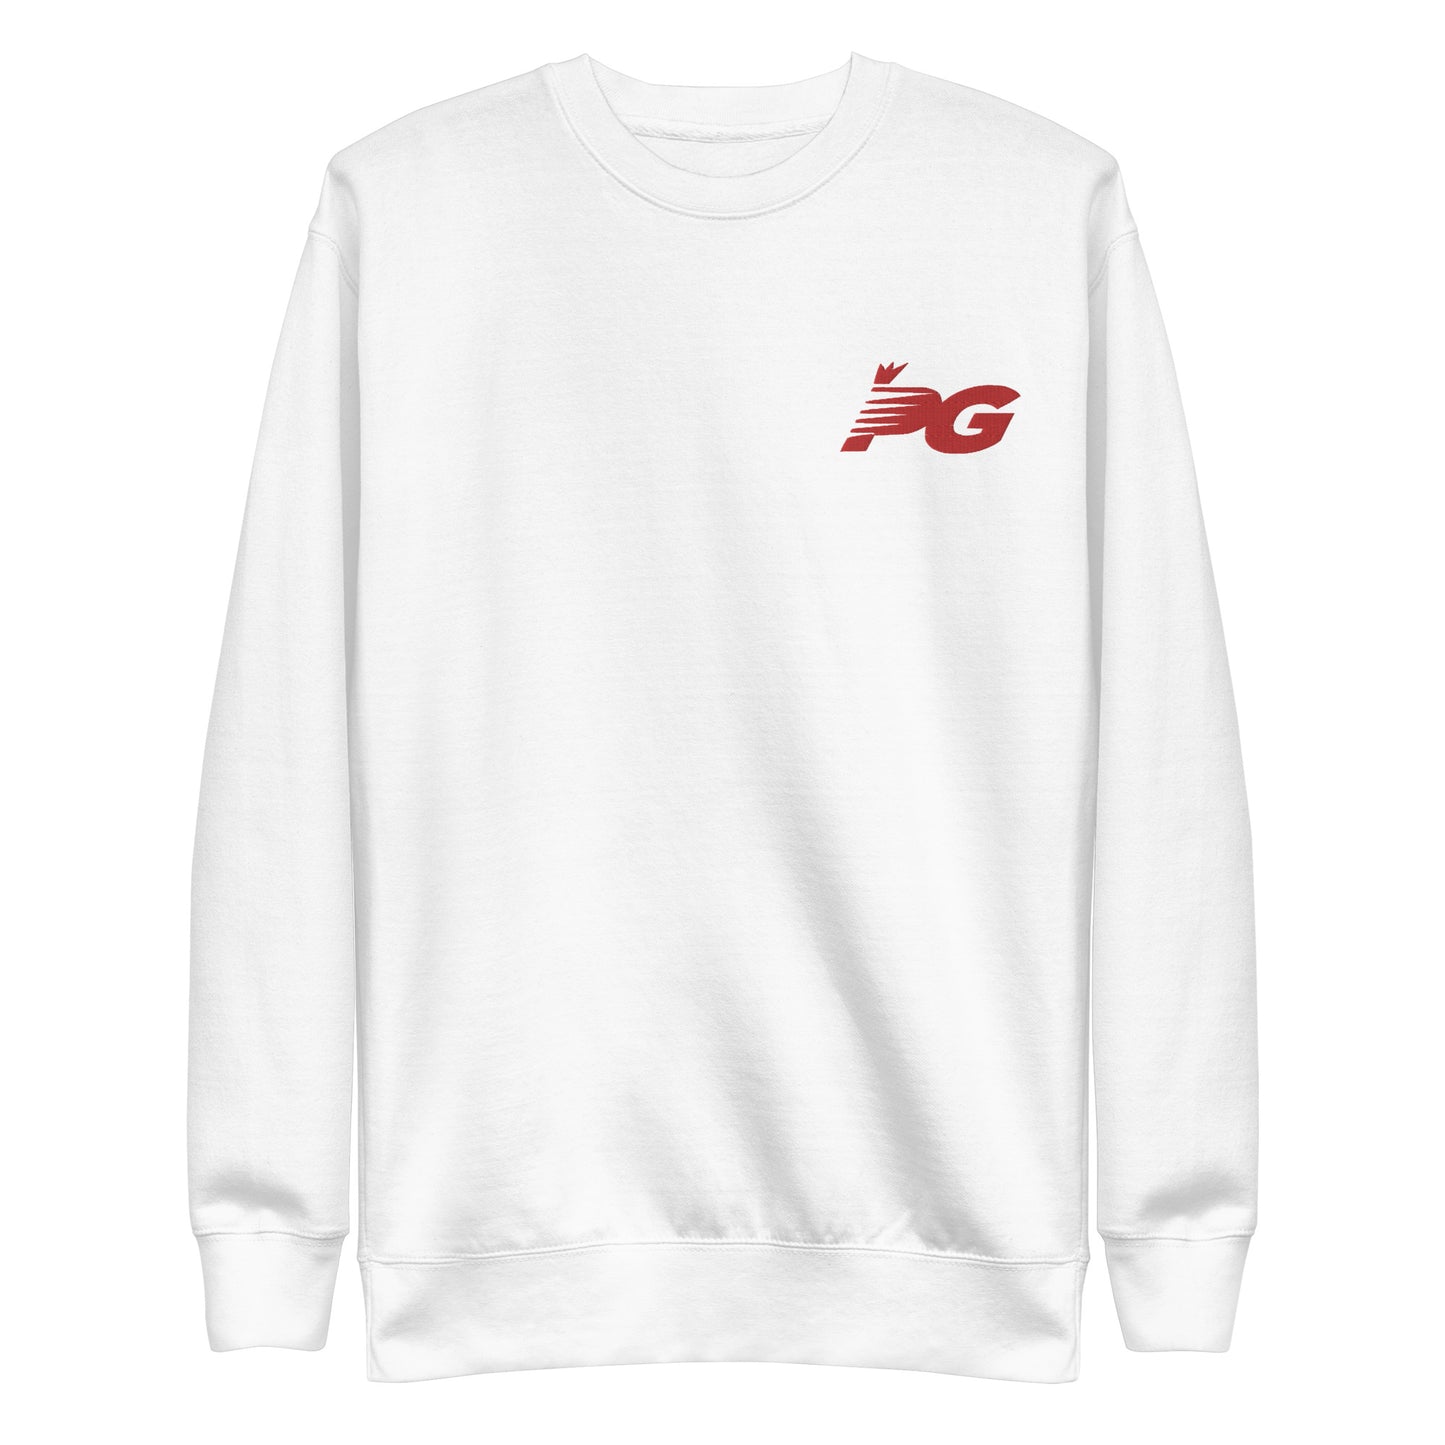 PG999 Stitched Unisex Premium Sweatshirt